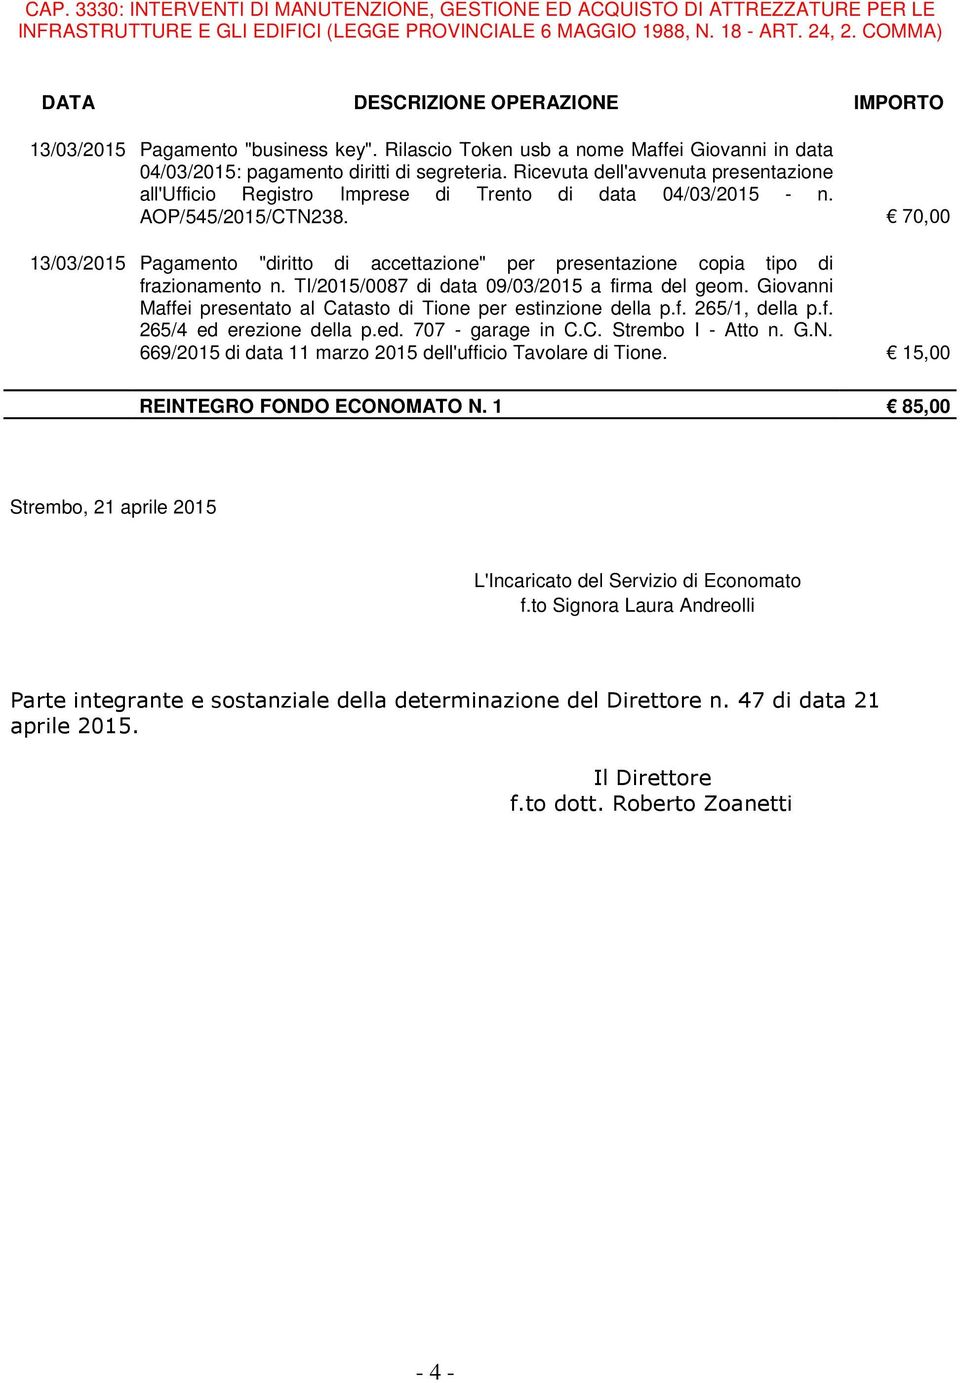 Ricevuta dell'avvenuta presentazione all'ufficio Registro Imprese di Trento di data 04/03/2015 - n. AOP/545/2015/CTN238.